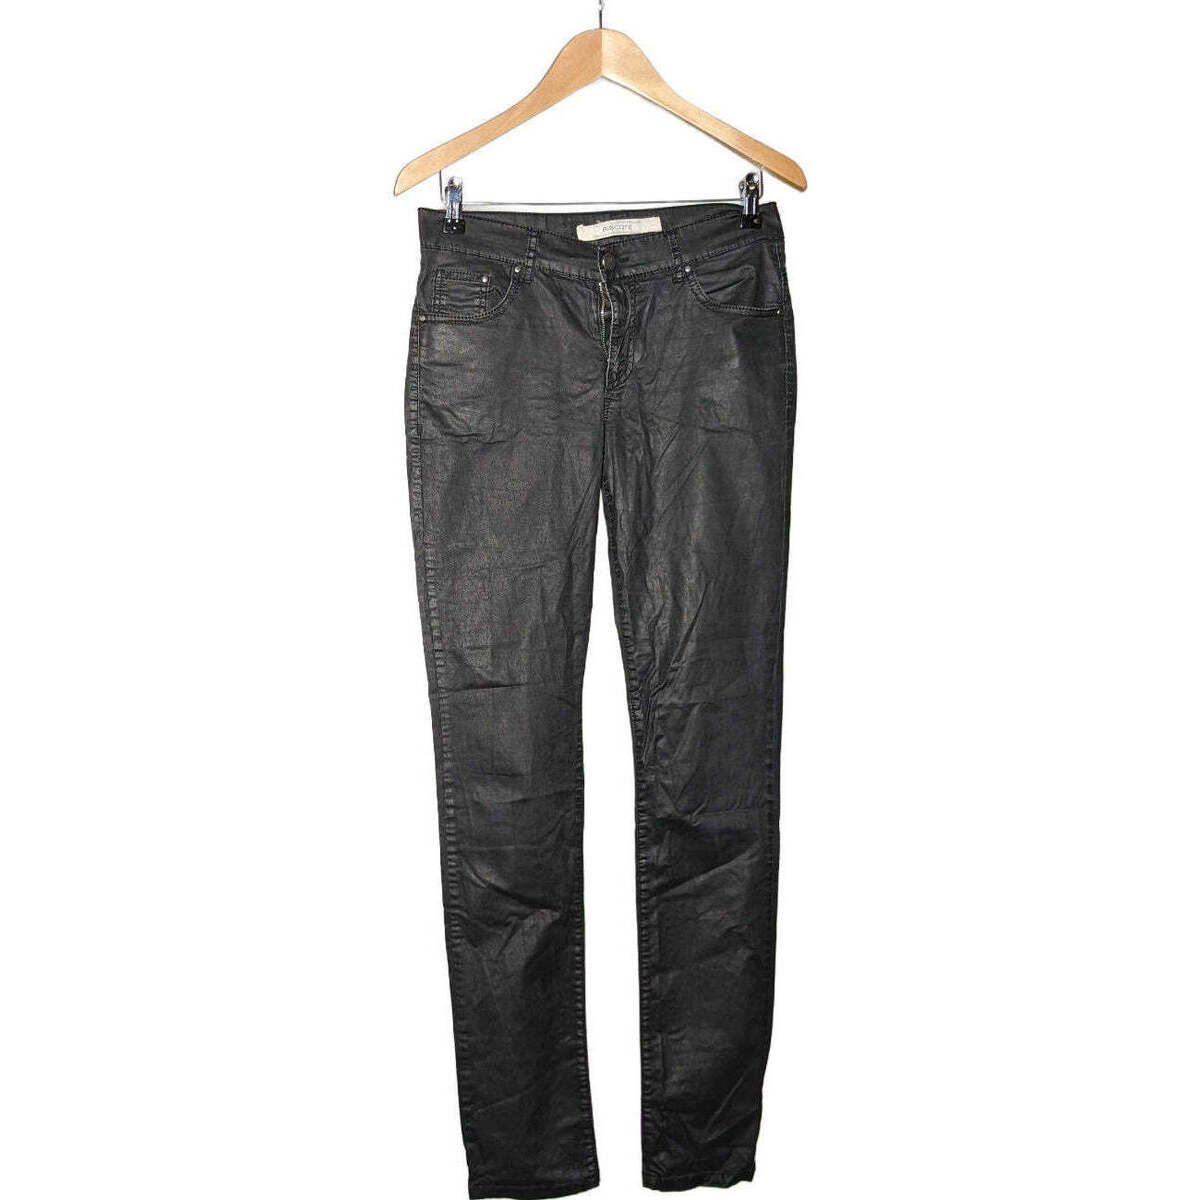 Vêtements Femme Pantalons Biscote 40 - T3 - L Noir